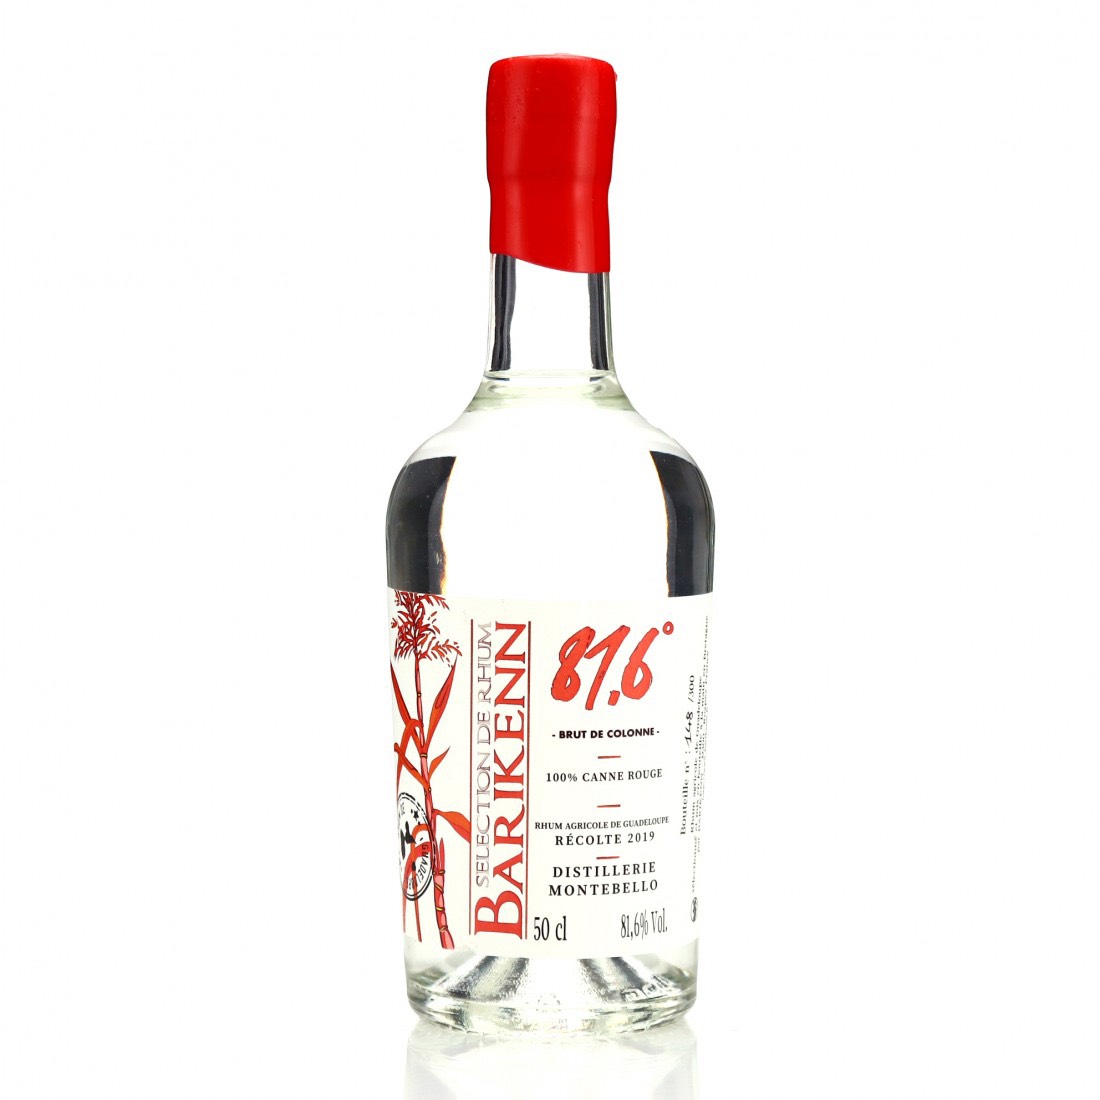 Bottle image of Montebello Brut de colonne - Canne rouge